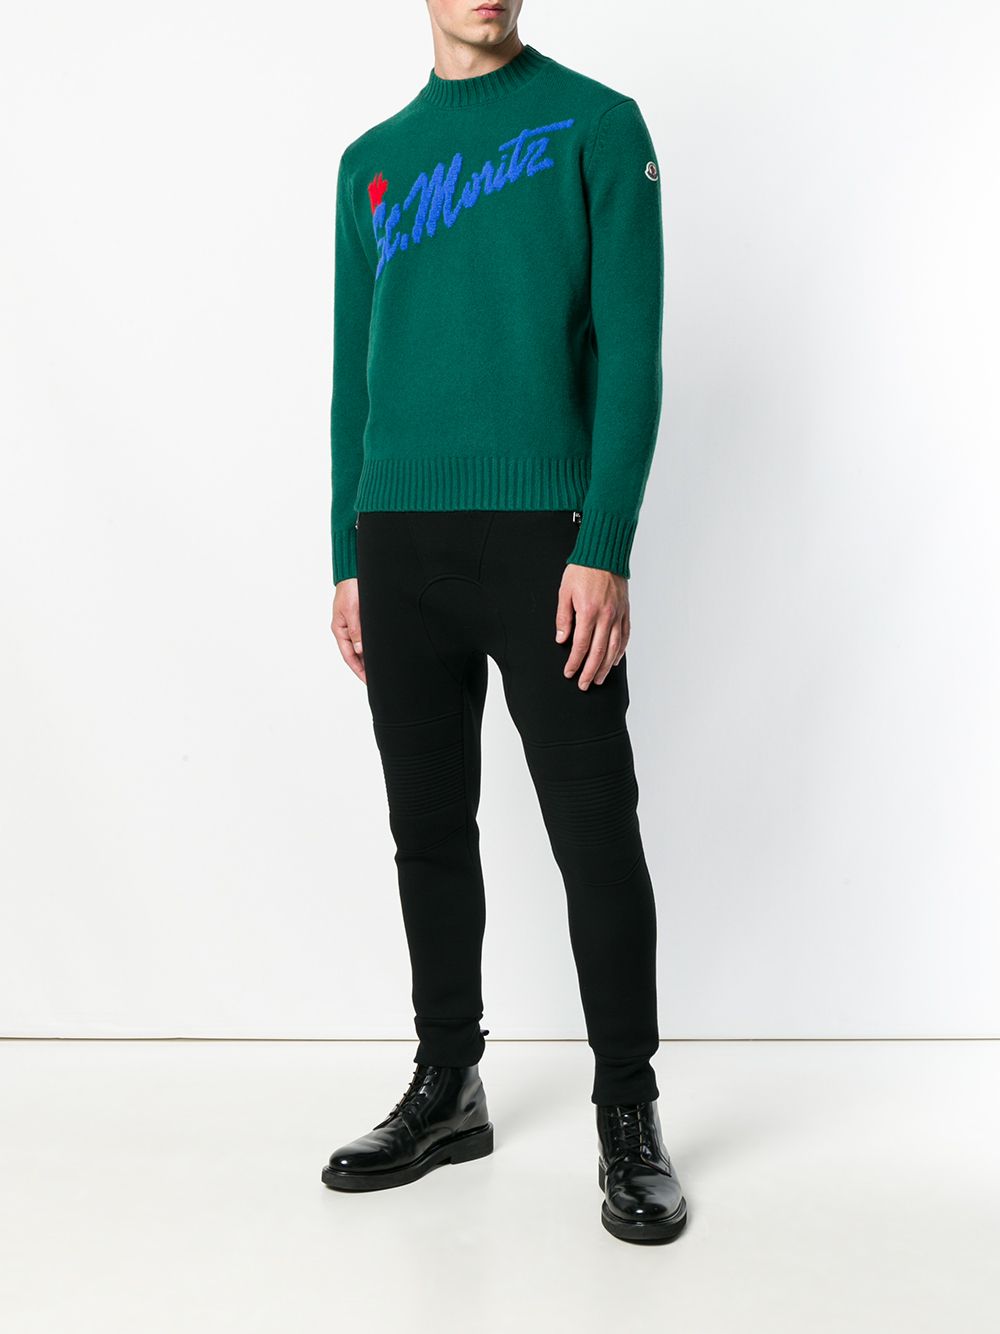 фото Moncler трикотажный свитер с логотипом интарсия